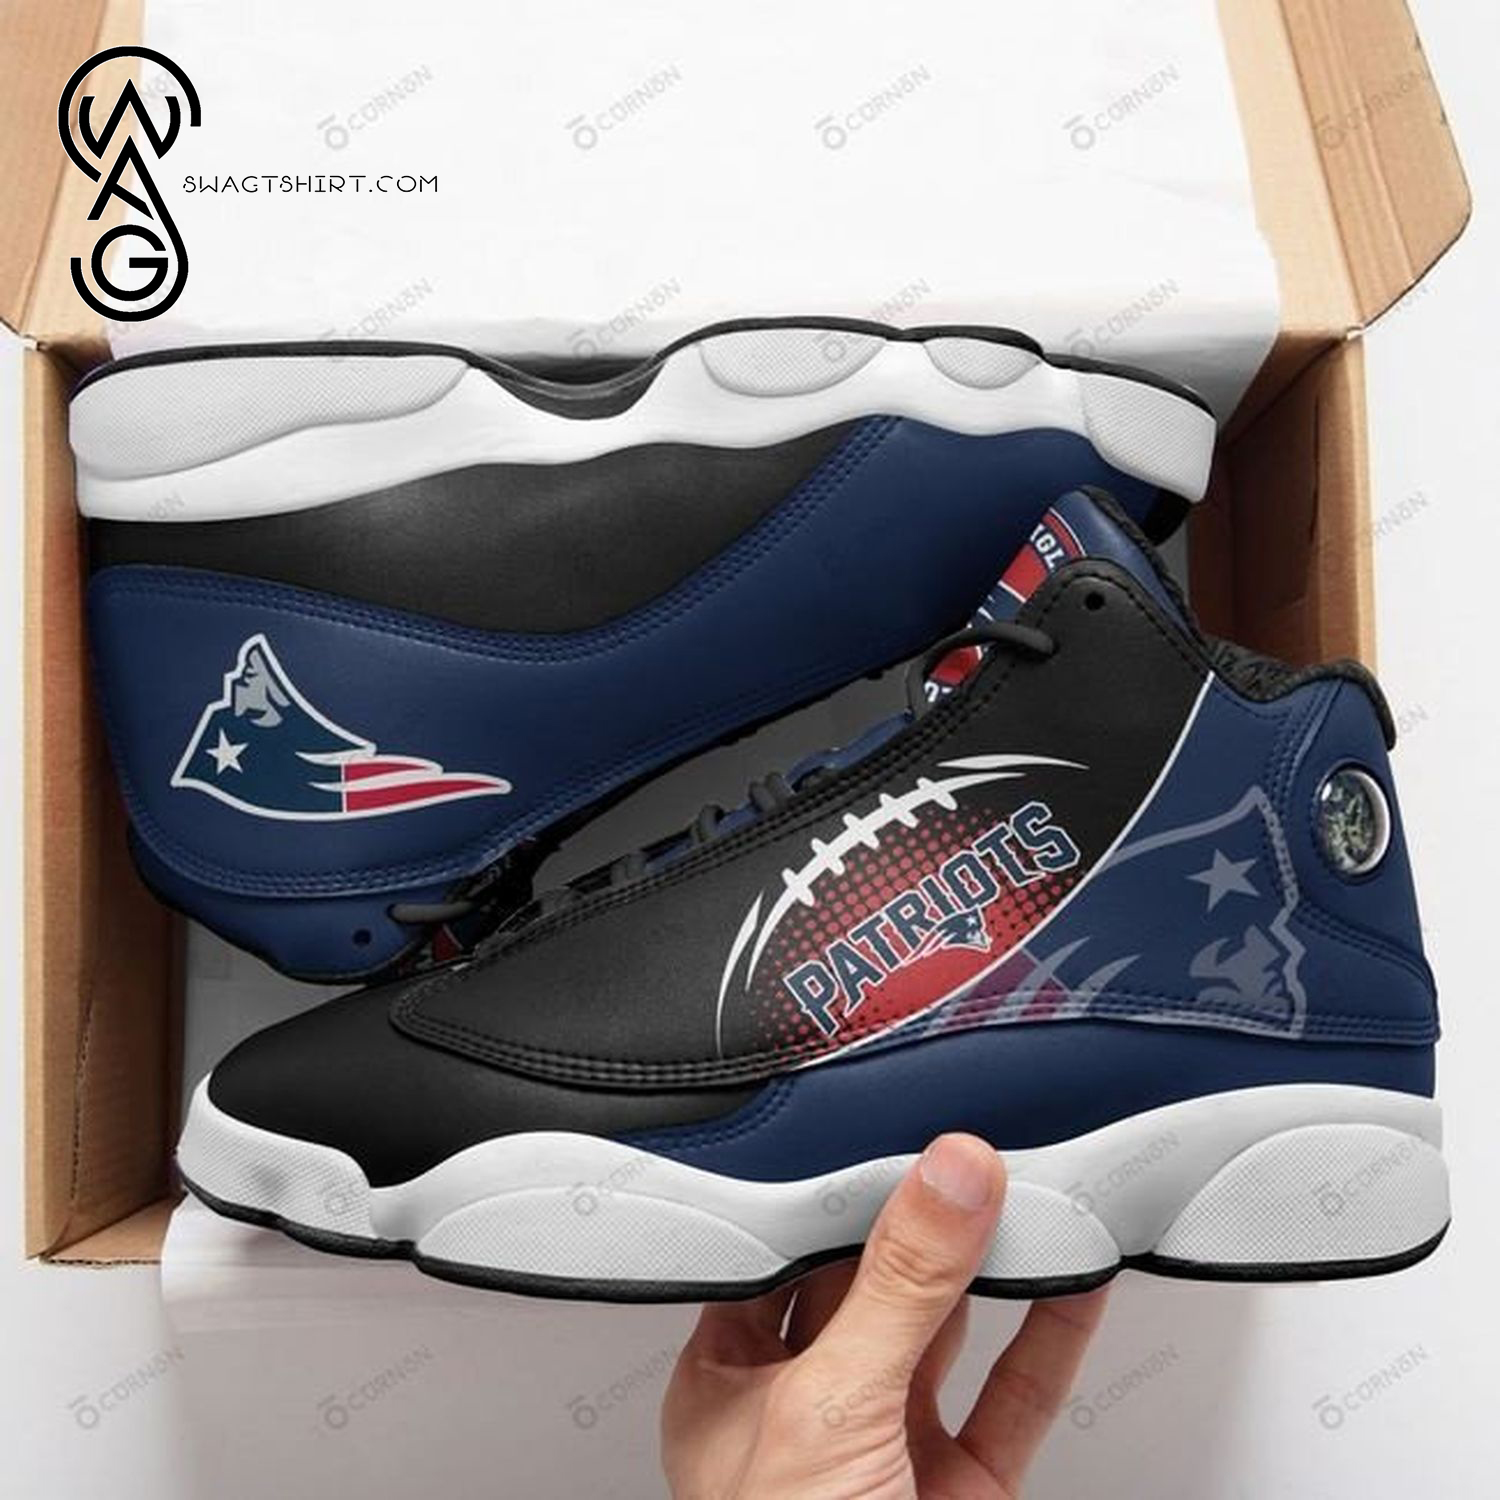 NFL New England Patriots Air Jordan 13 Shoes